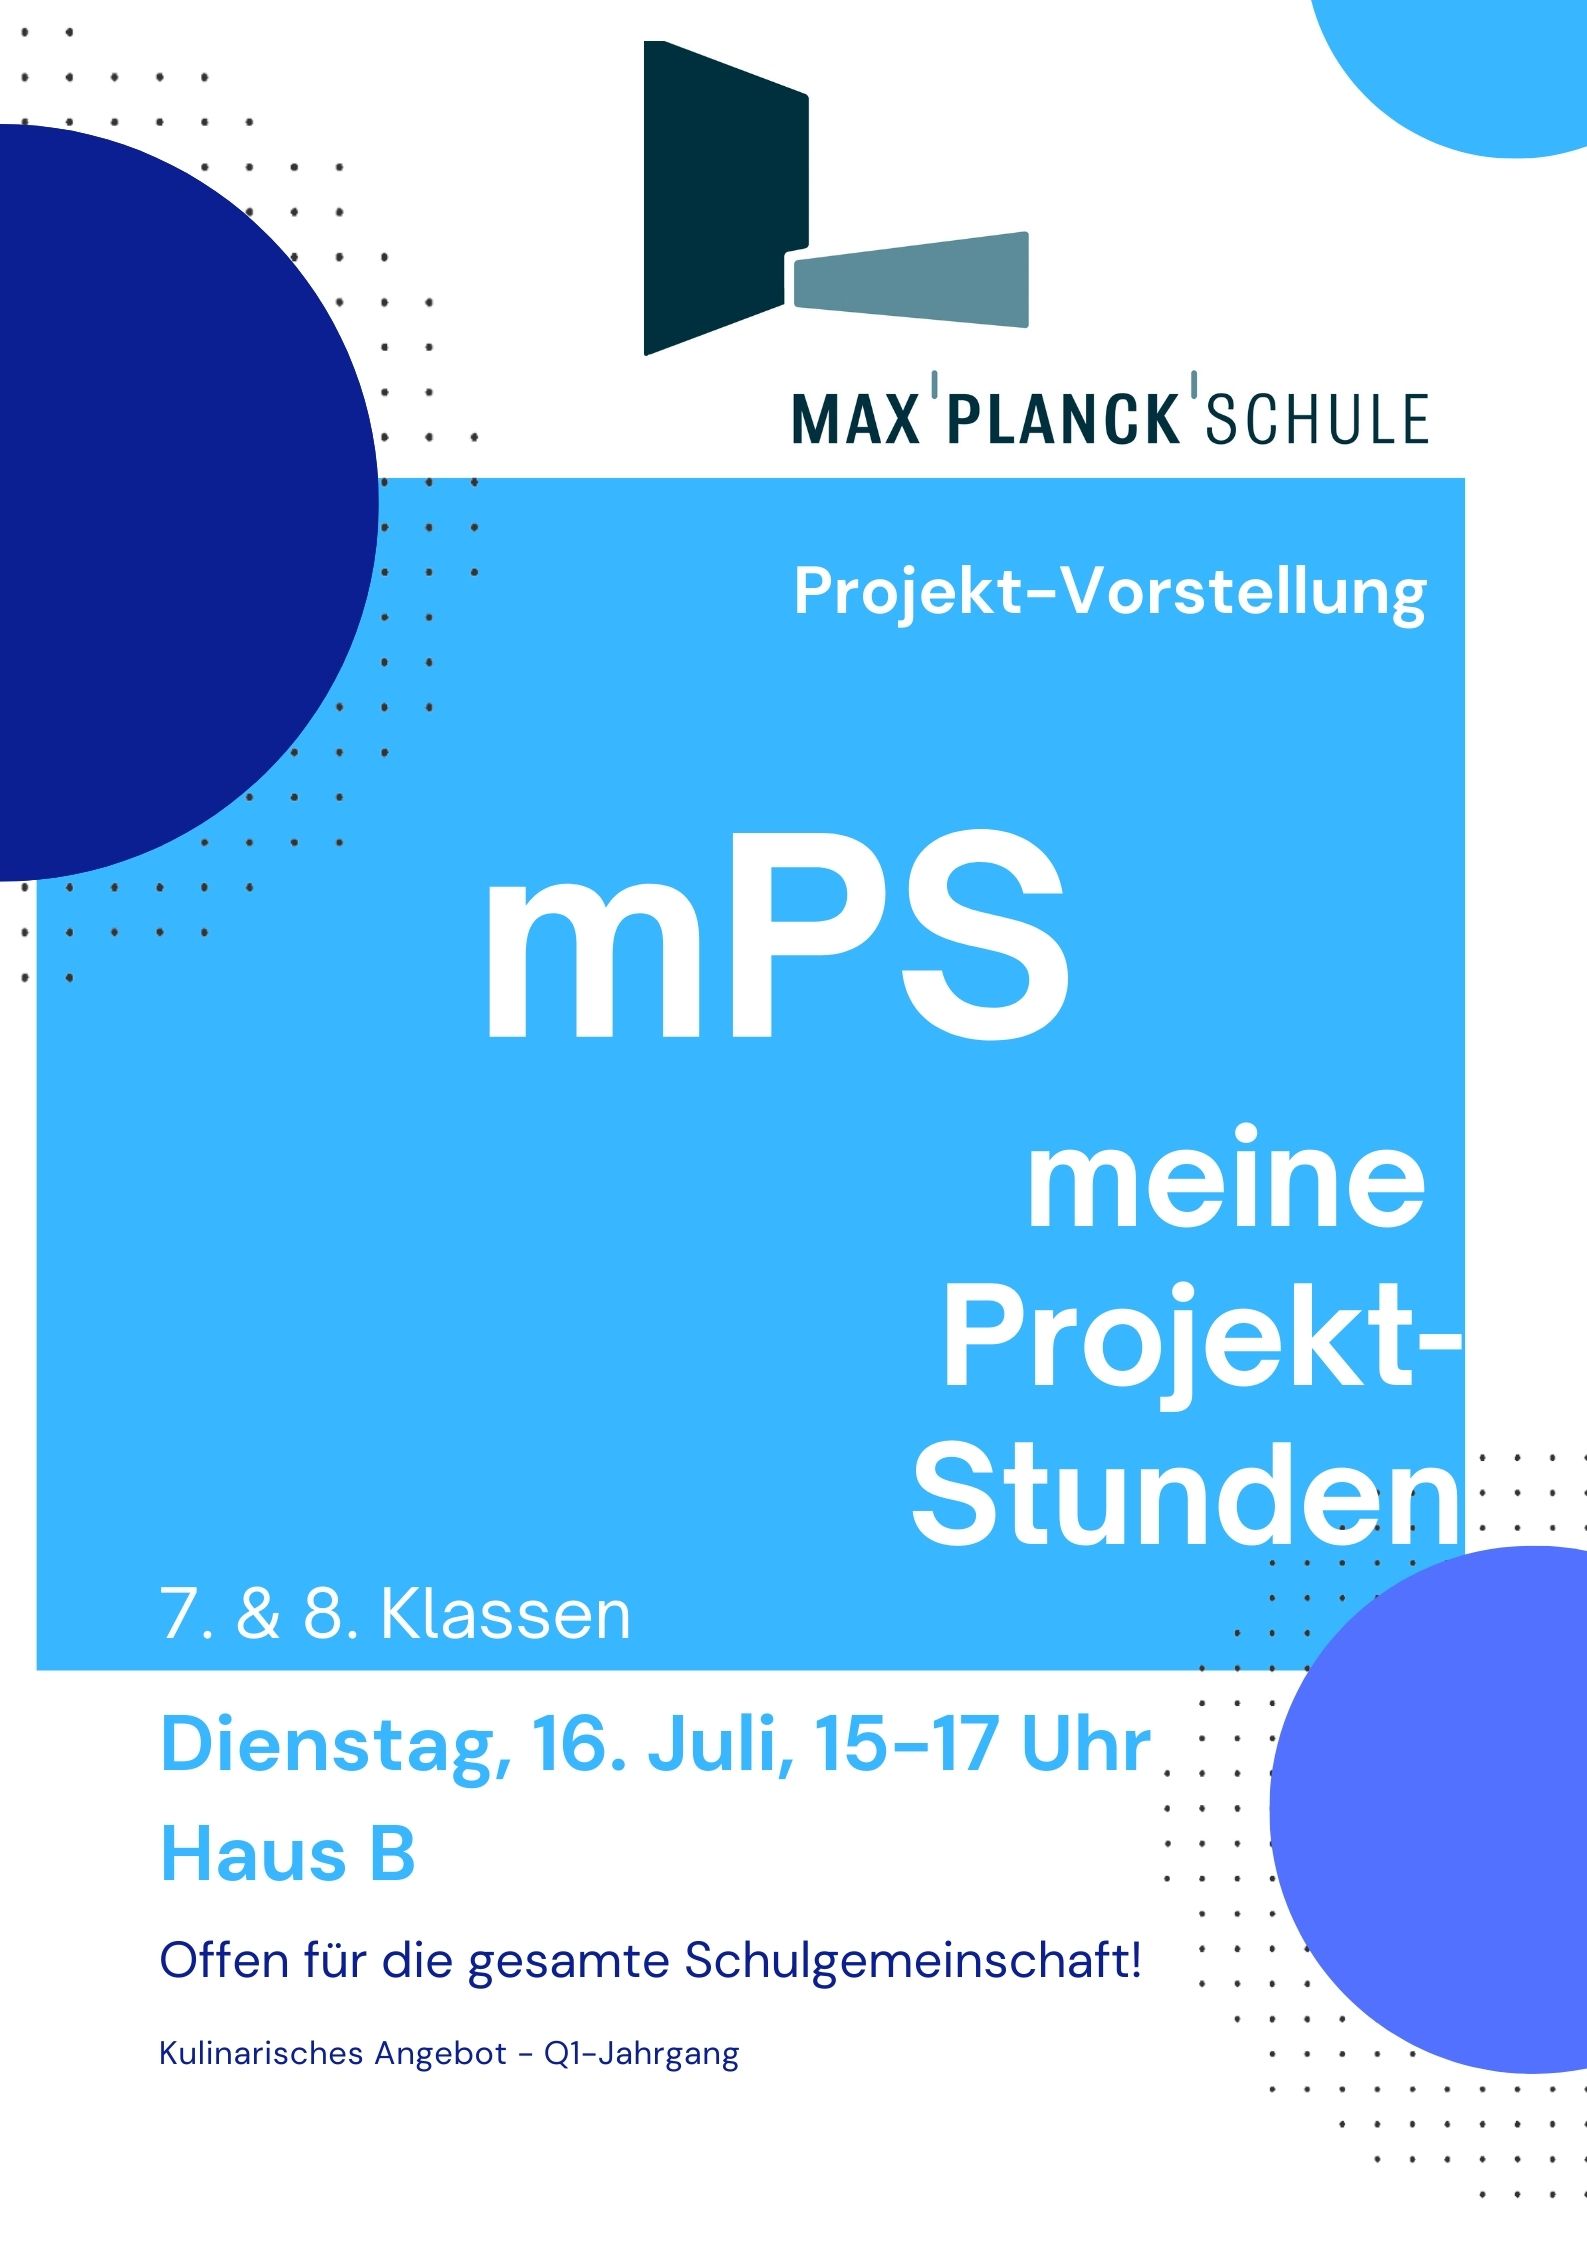 Vorstellung der Projekte aus "mPS-meine Projekt-Stunden" am 16. Juli